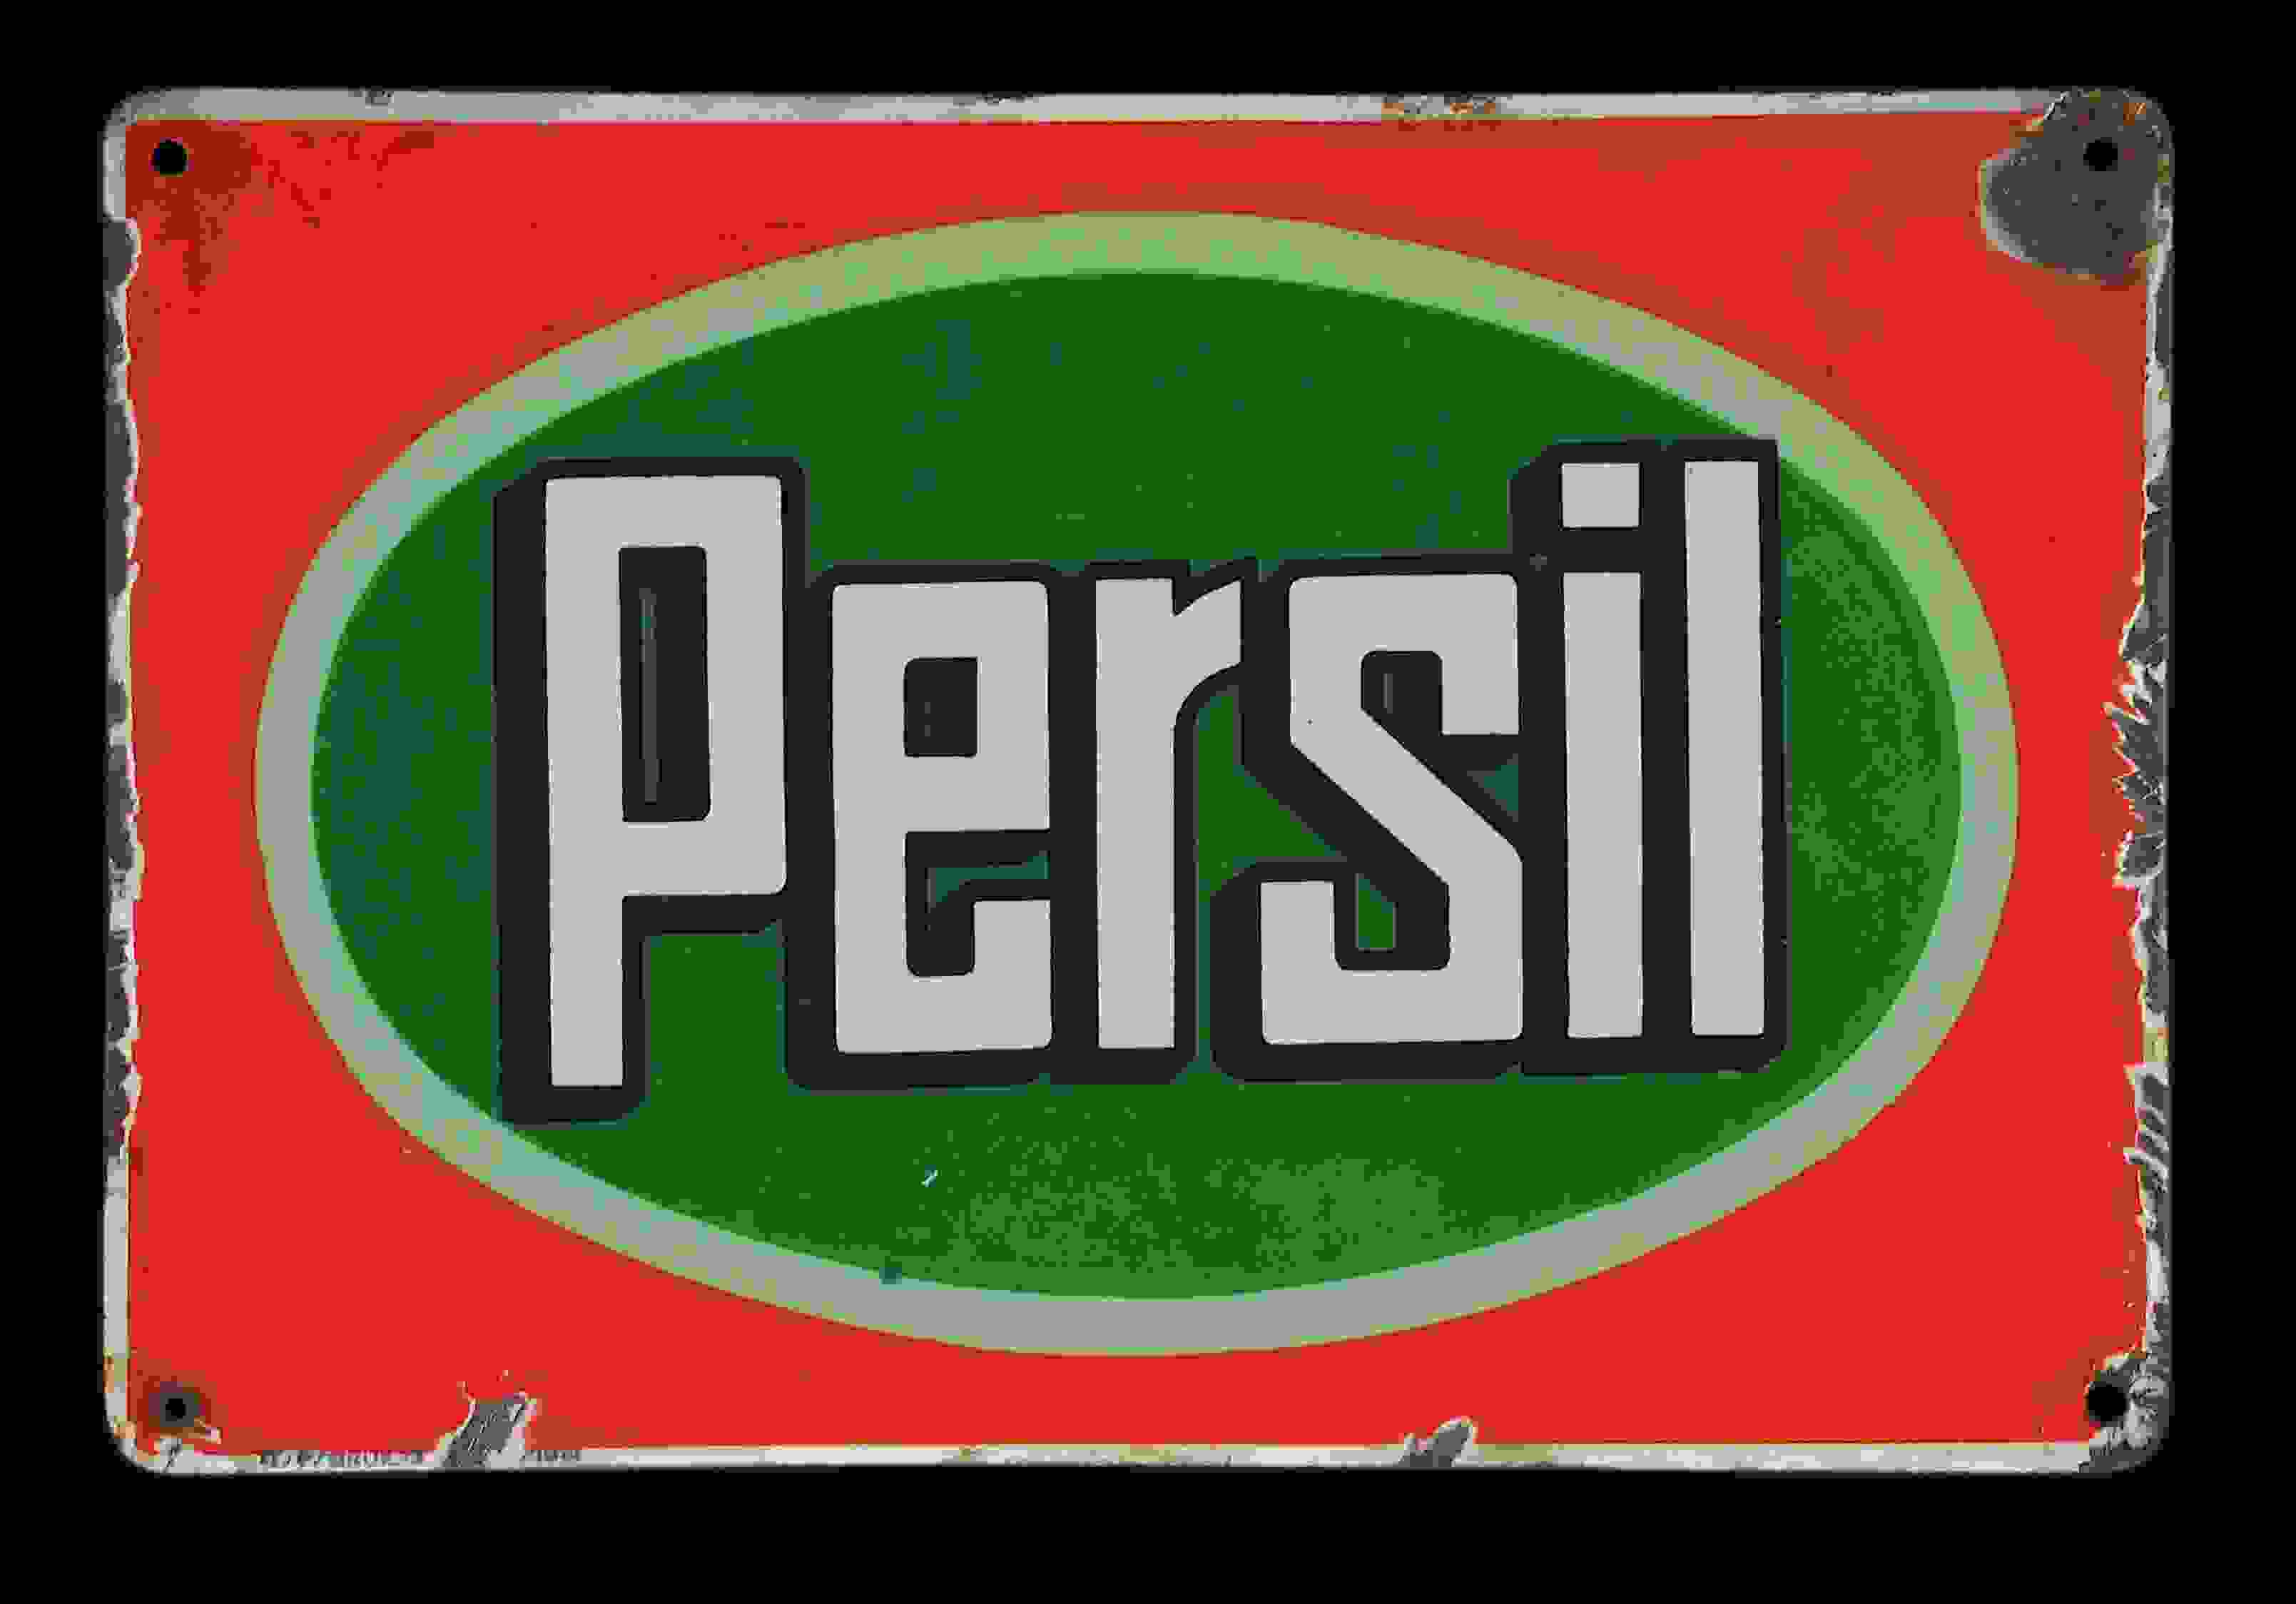 Persil 